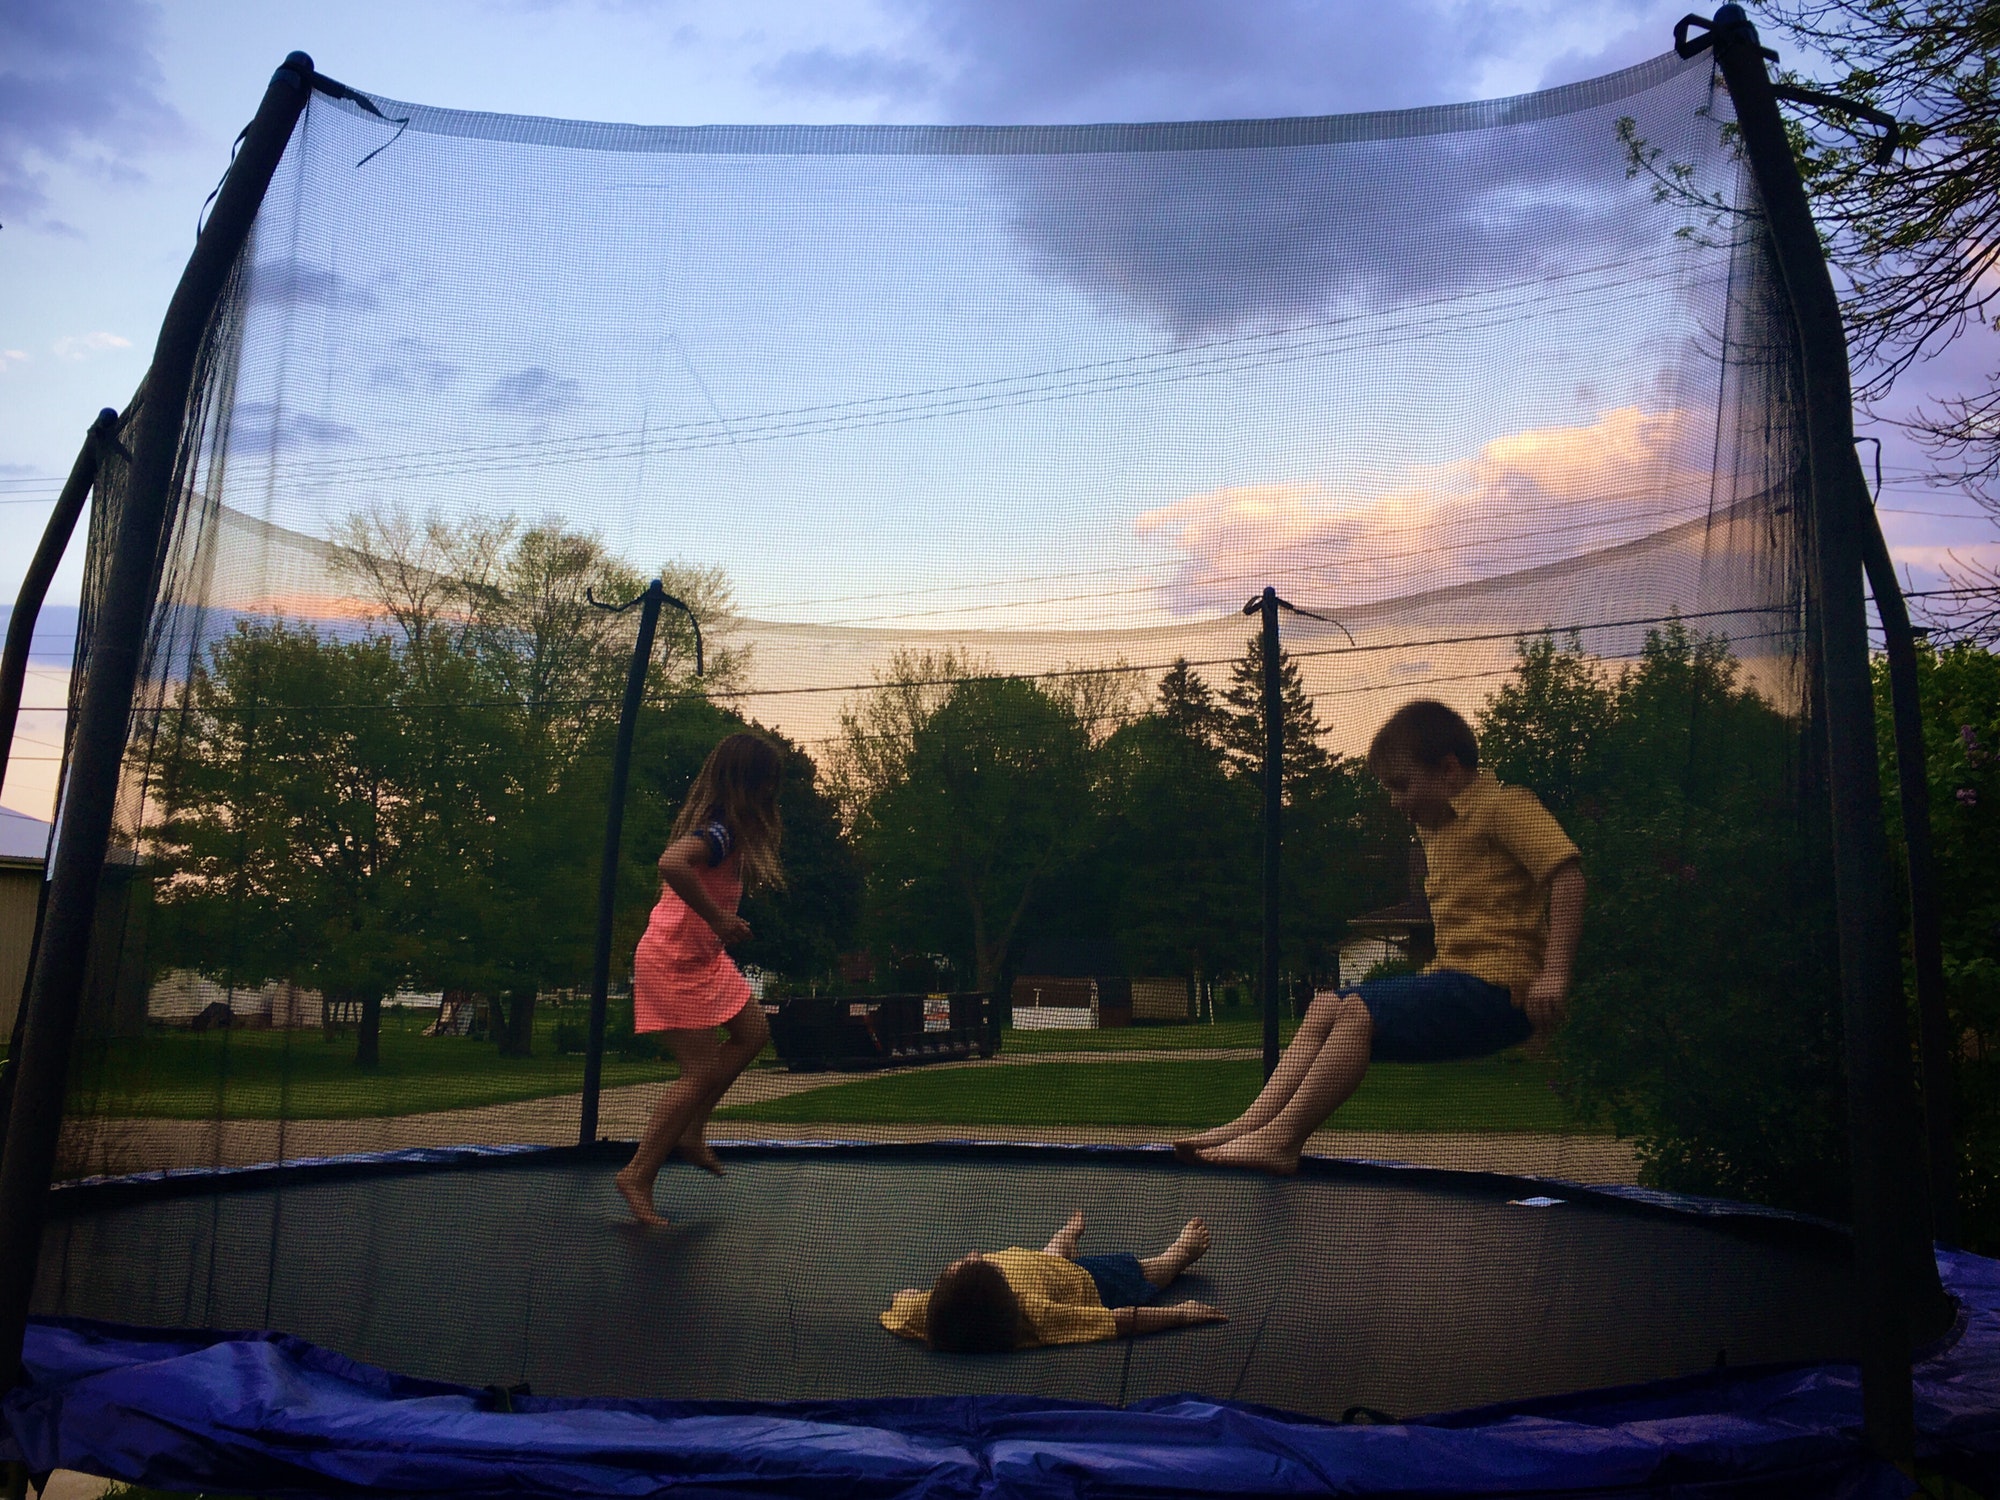 Comment garantir un entretien efficace de son trampoline en adoptant les bons gestes ?